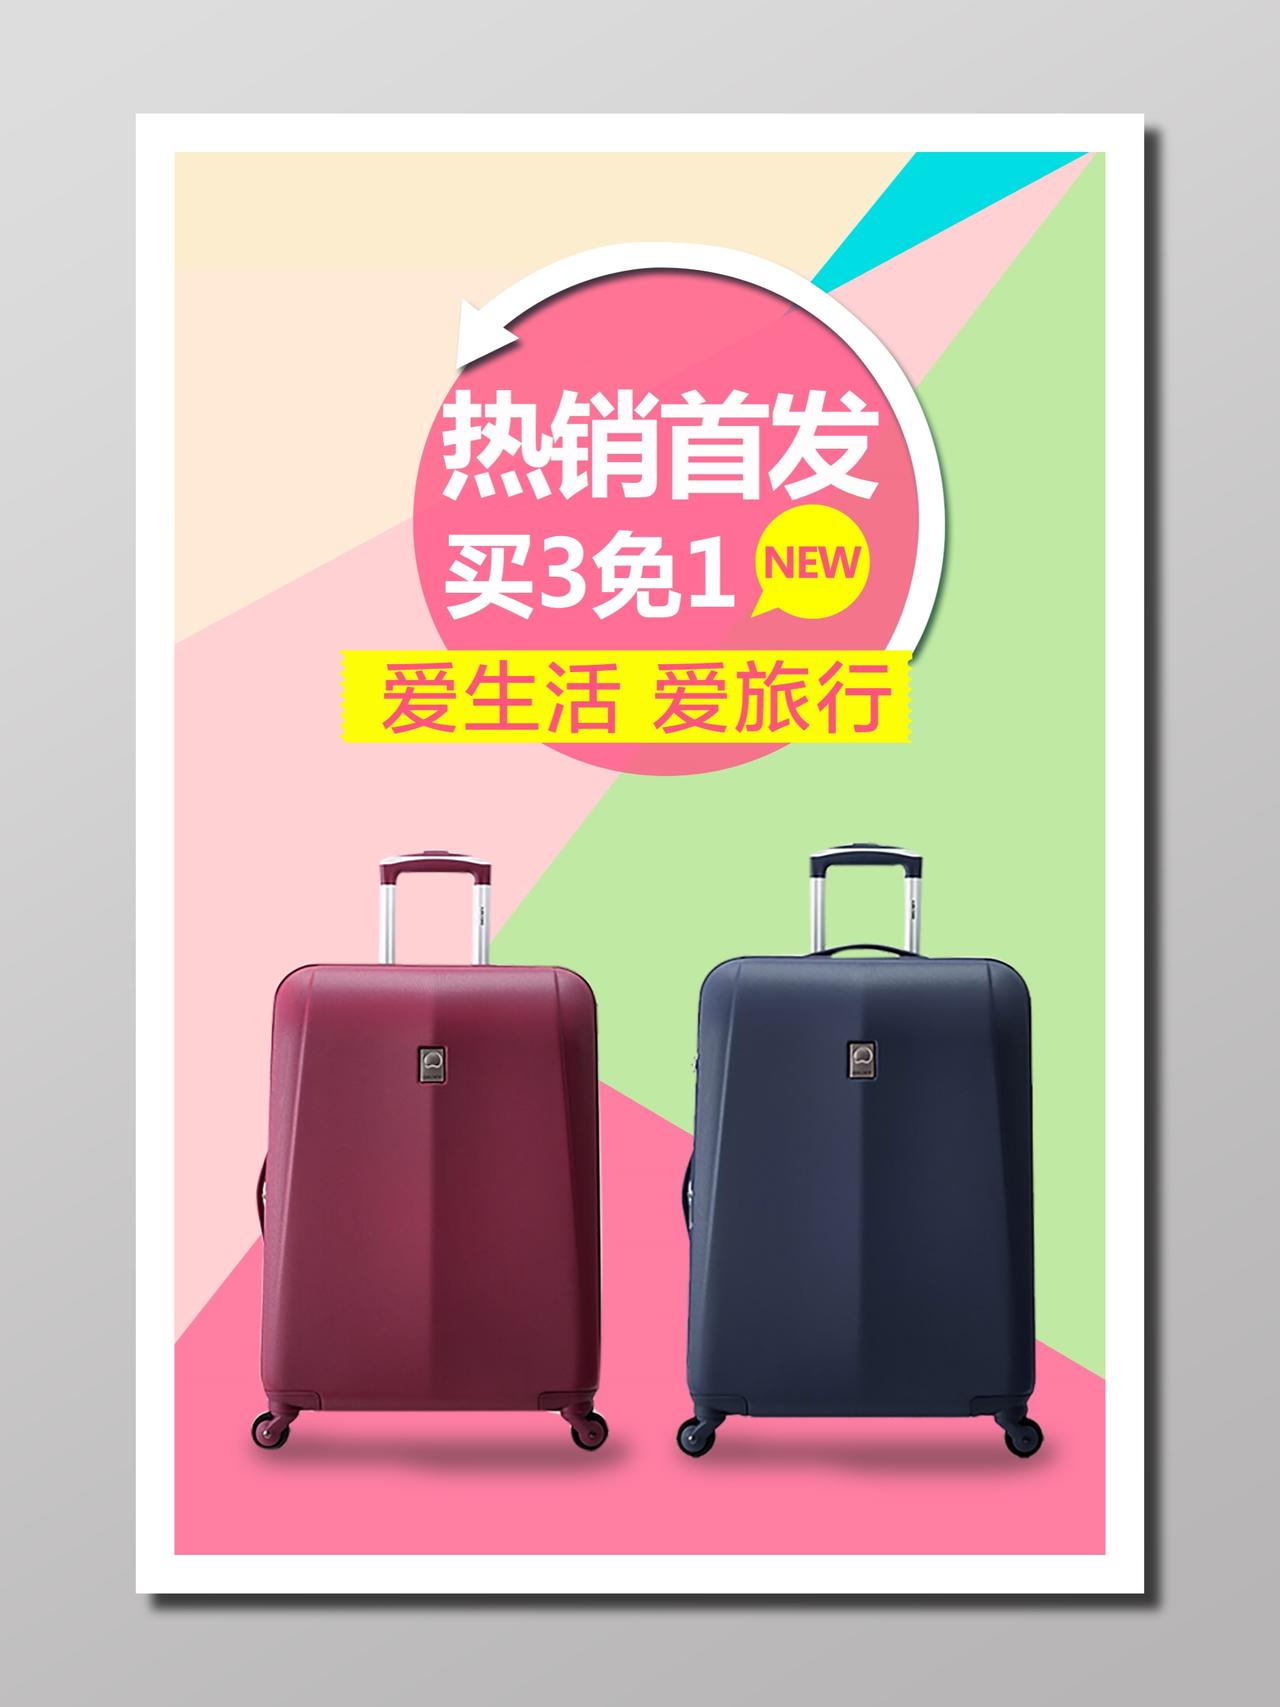 商品销售行李箱促销活动商务规划轻装粉色彩色热销首发宣传单